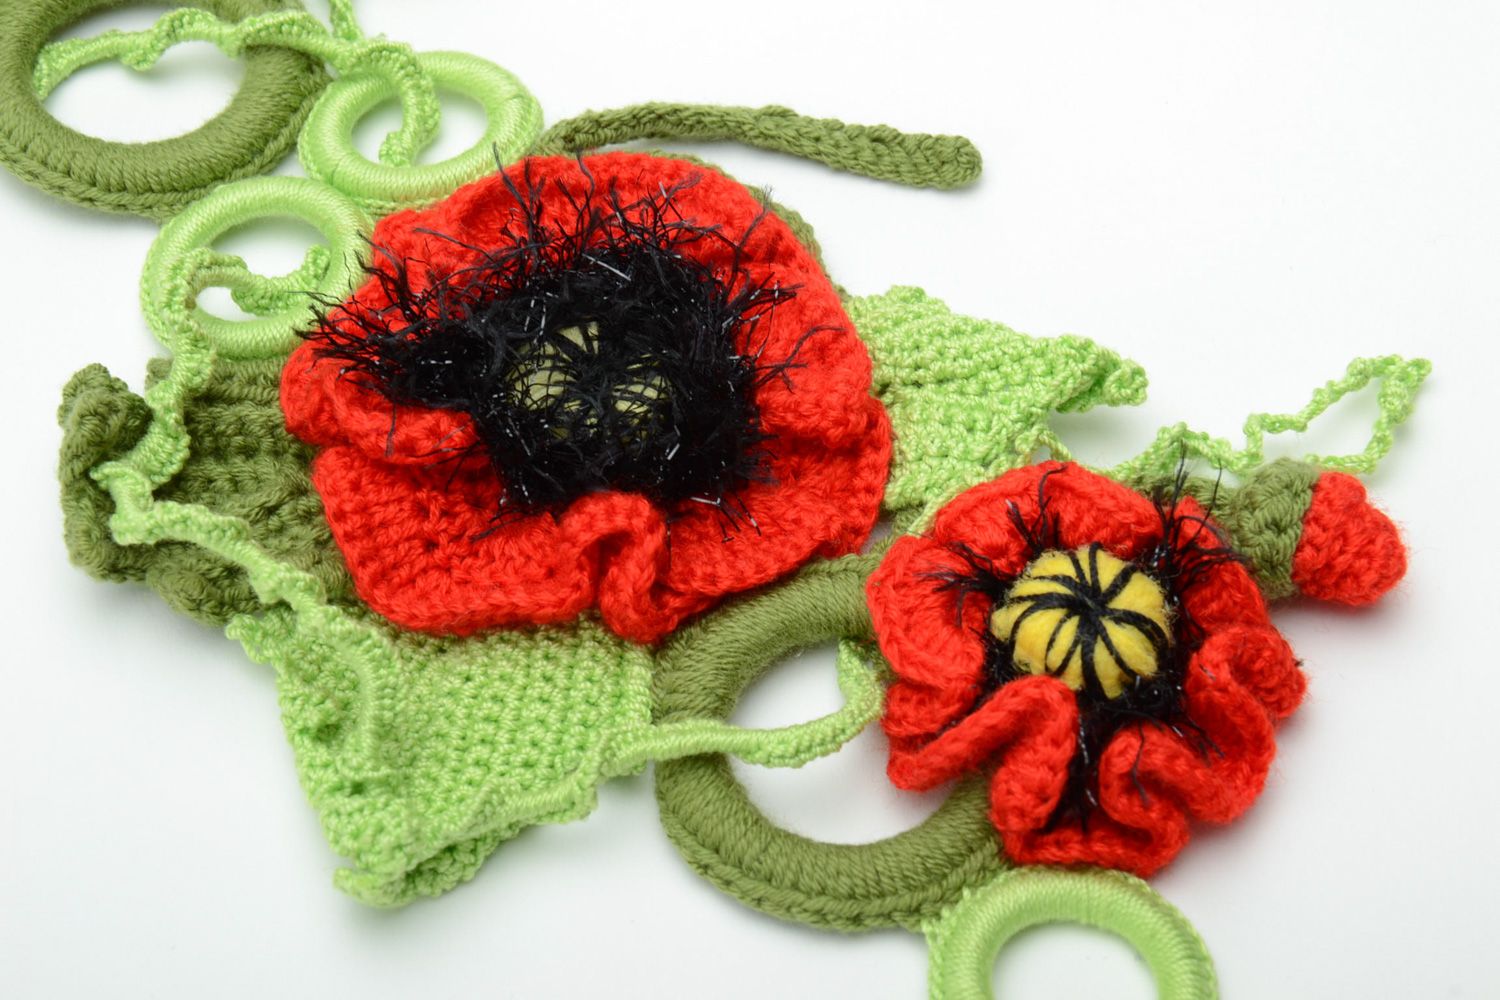 Ceinture tricotée en acrylique et coton avec fleurs de pavots rouges pour femme photo 4